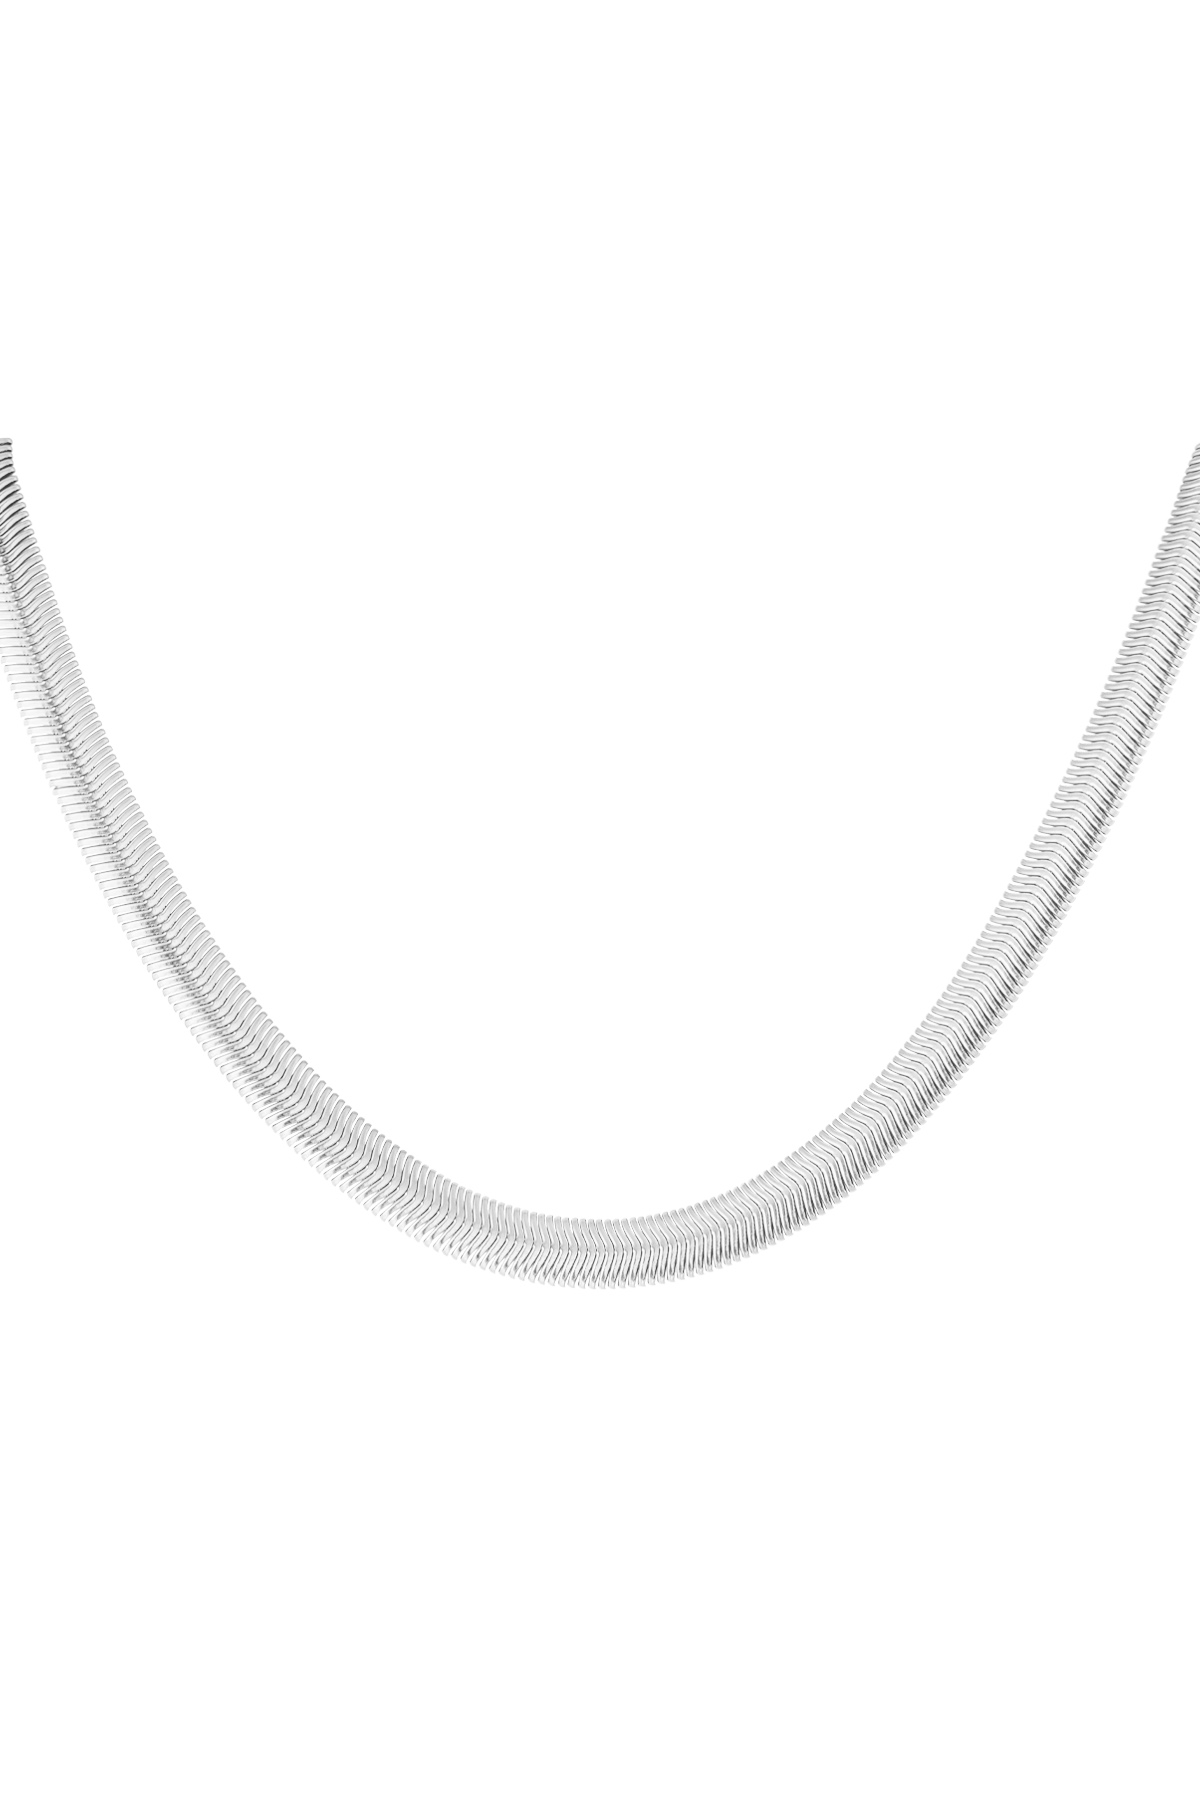 Unisex-Halskette flach geflochten - Silber